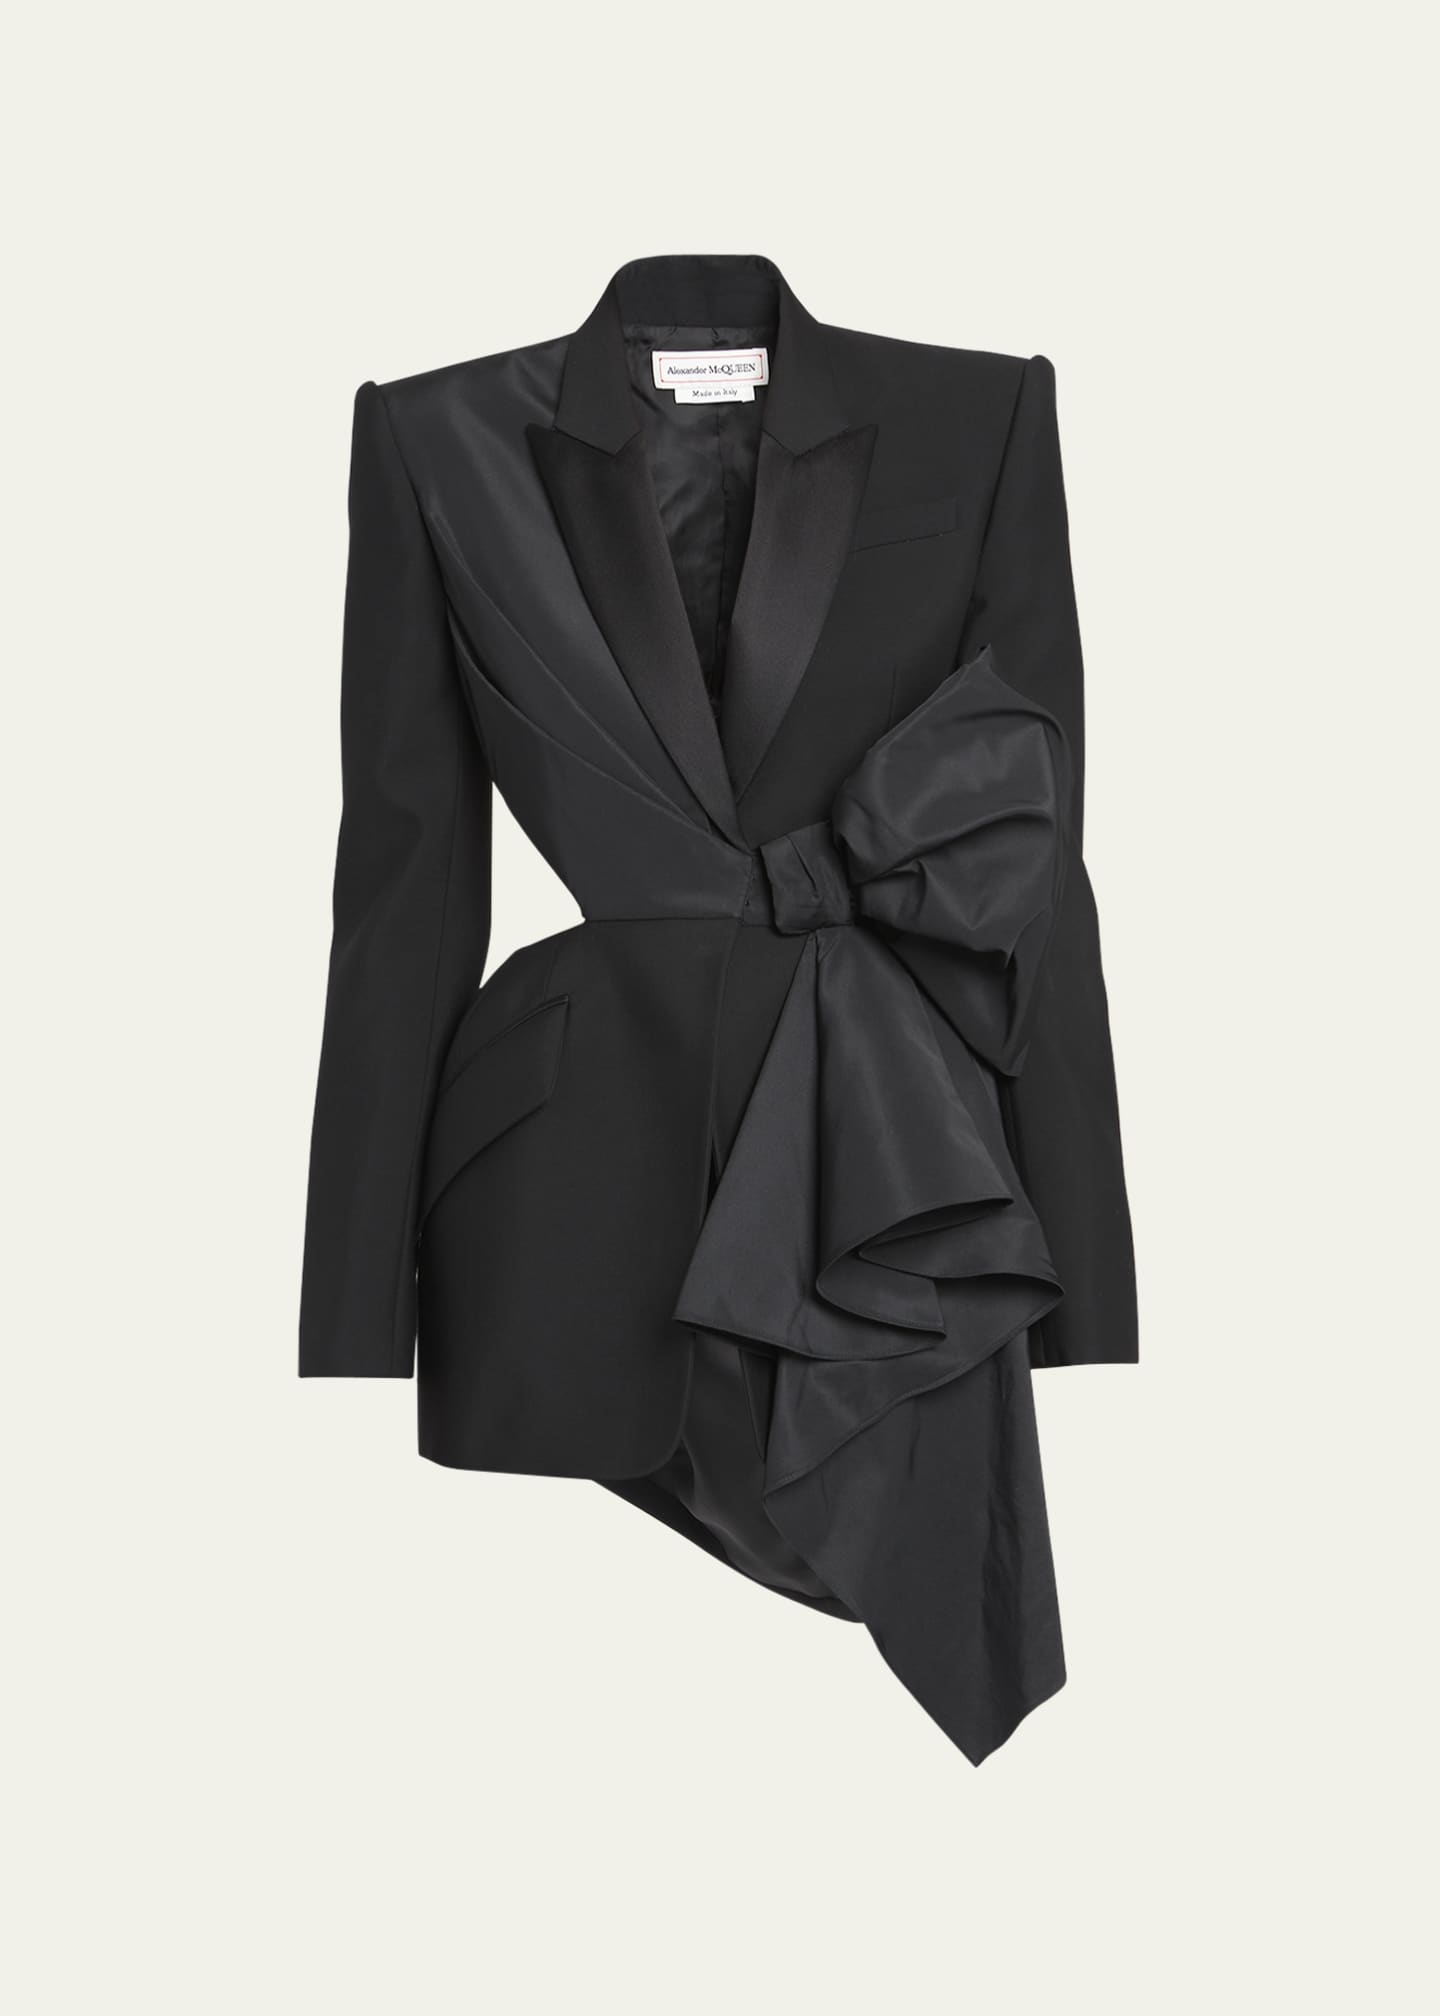 Alexander McQueen Cutout Blazer Jacket with Bow Detail - Bergdorf Goodman